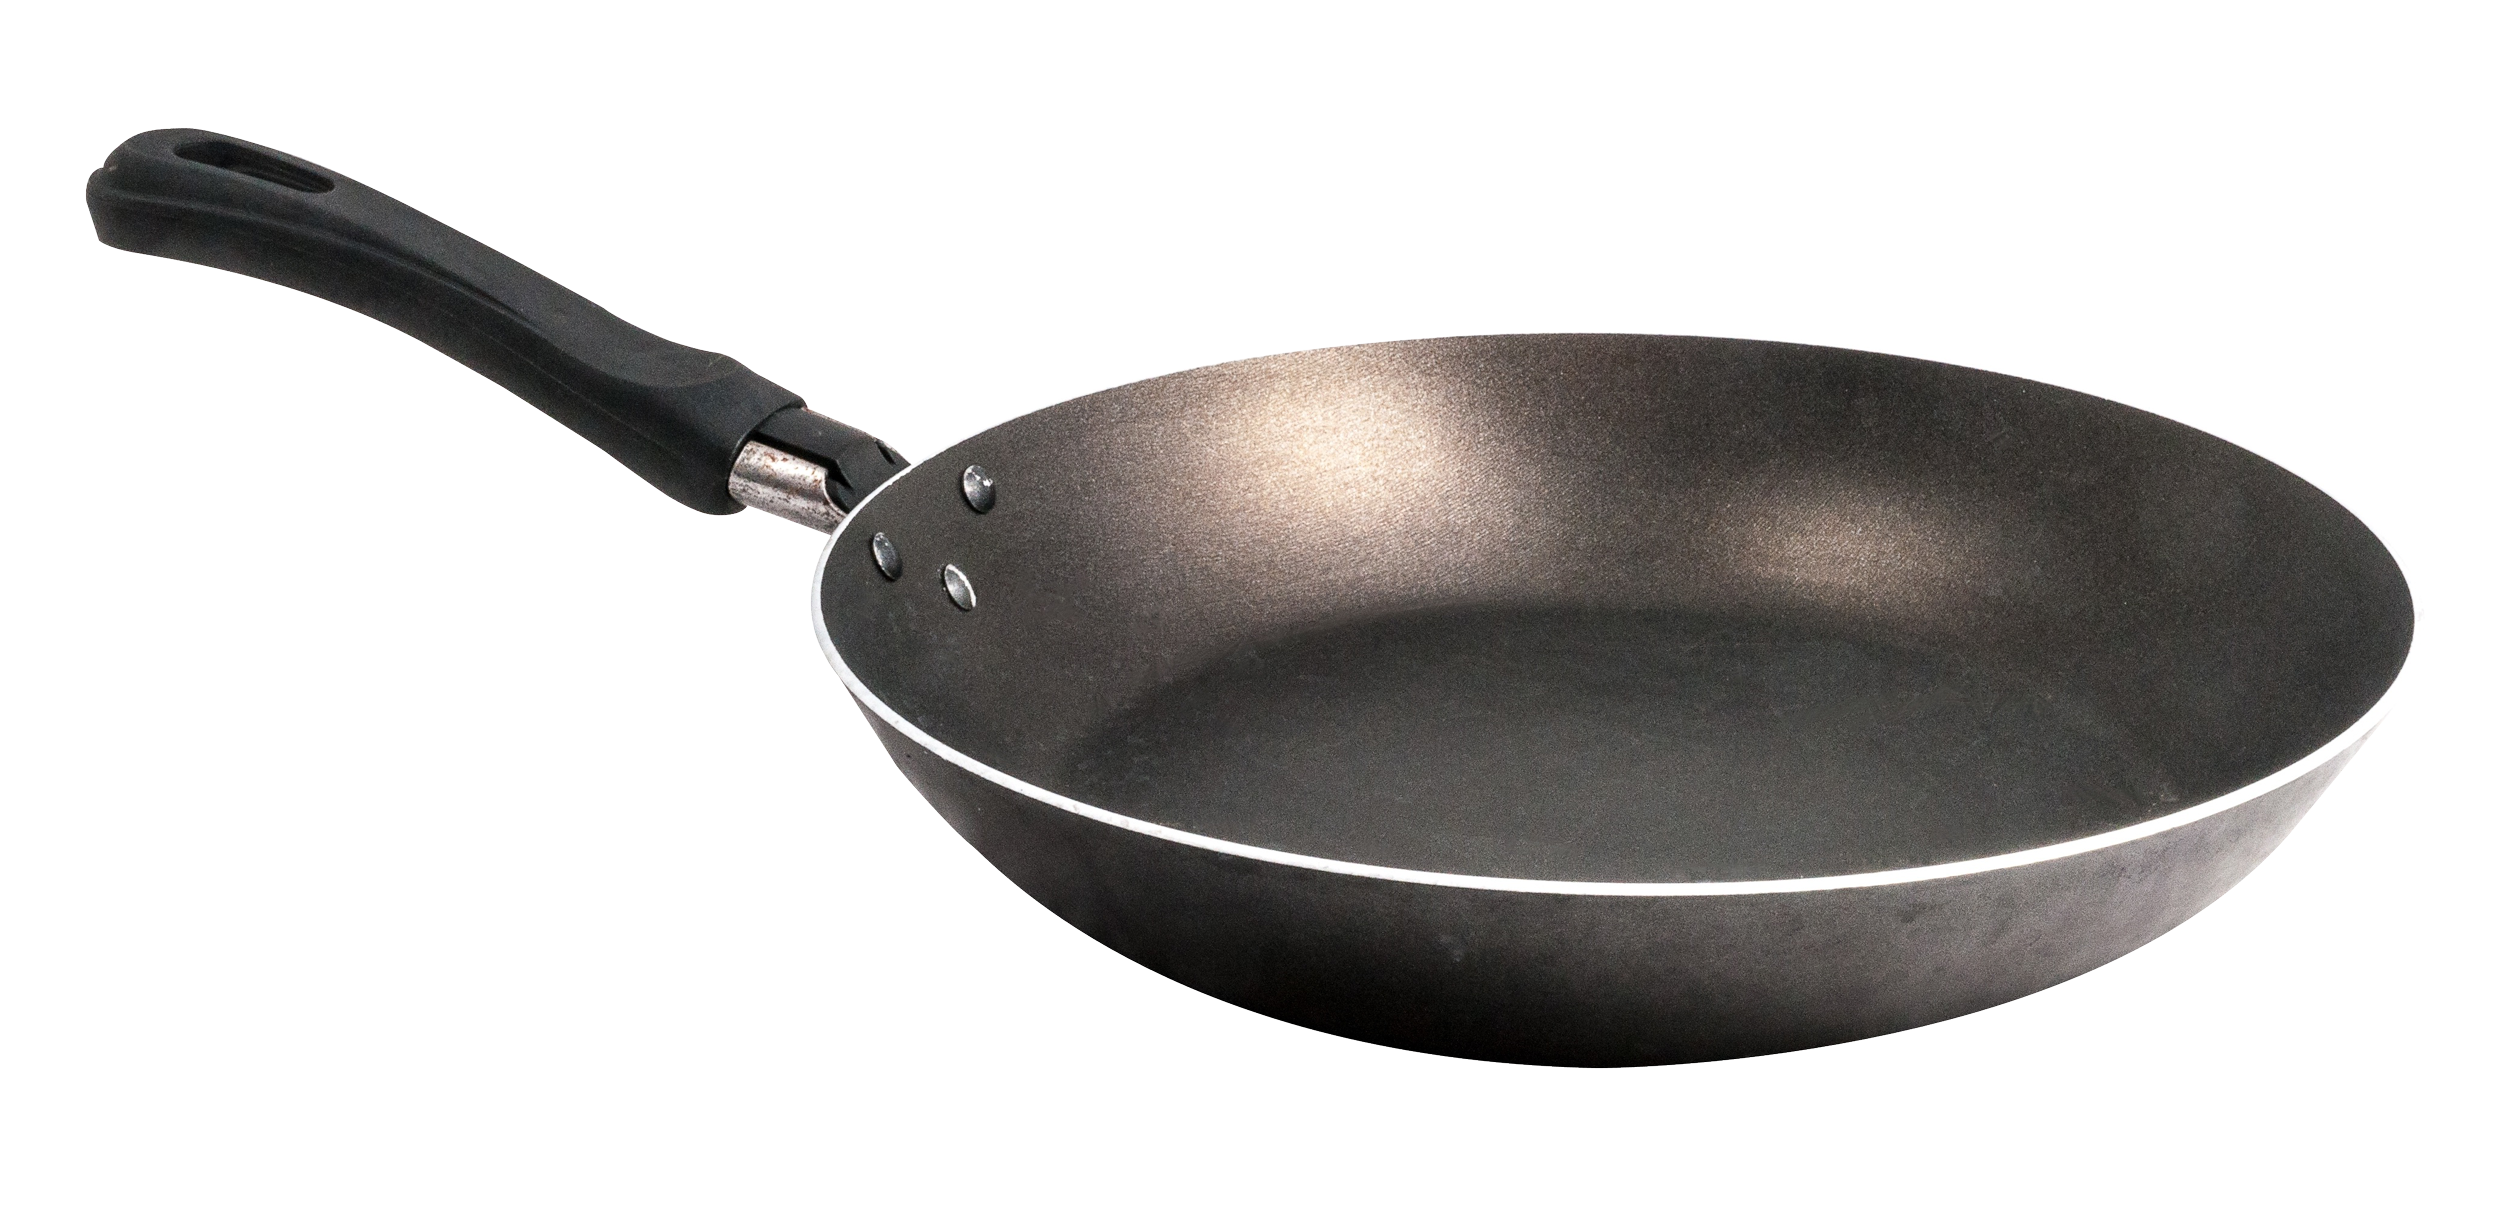 Frying Pan Transparent Image